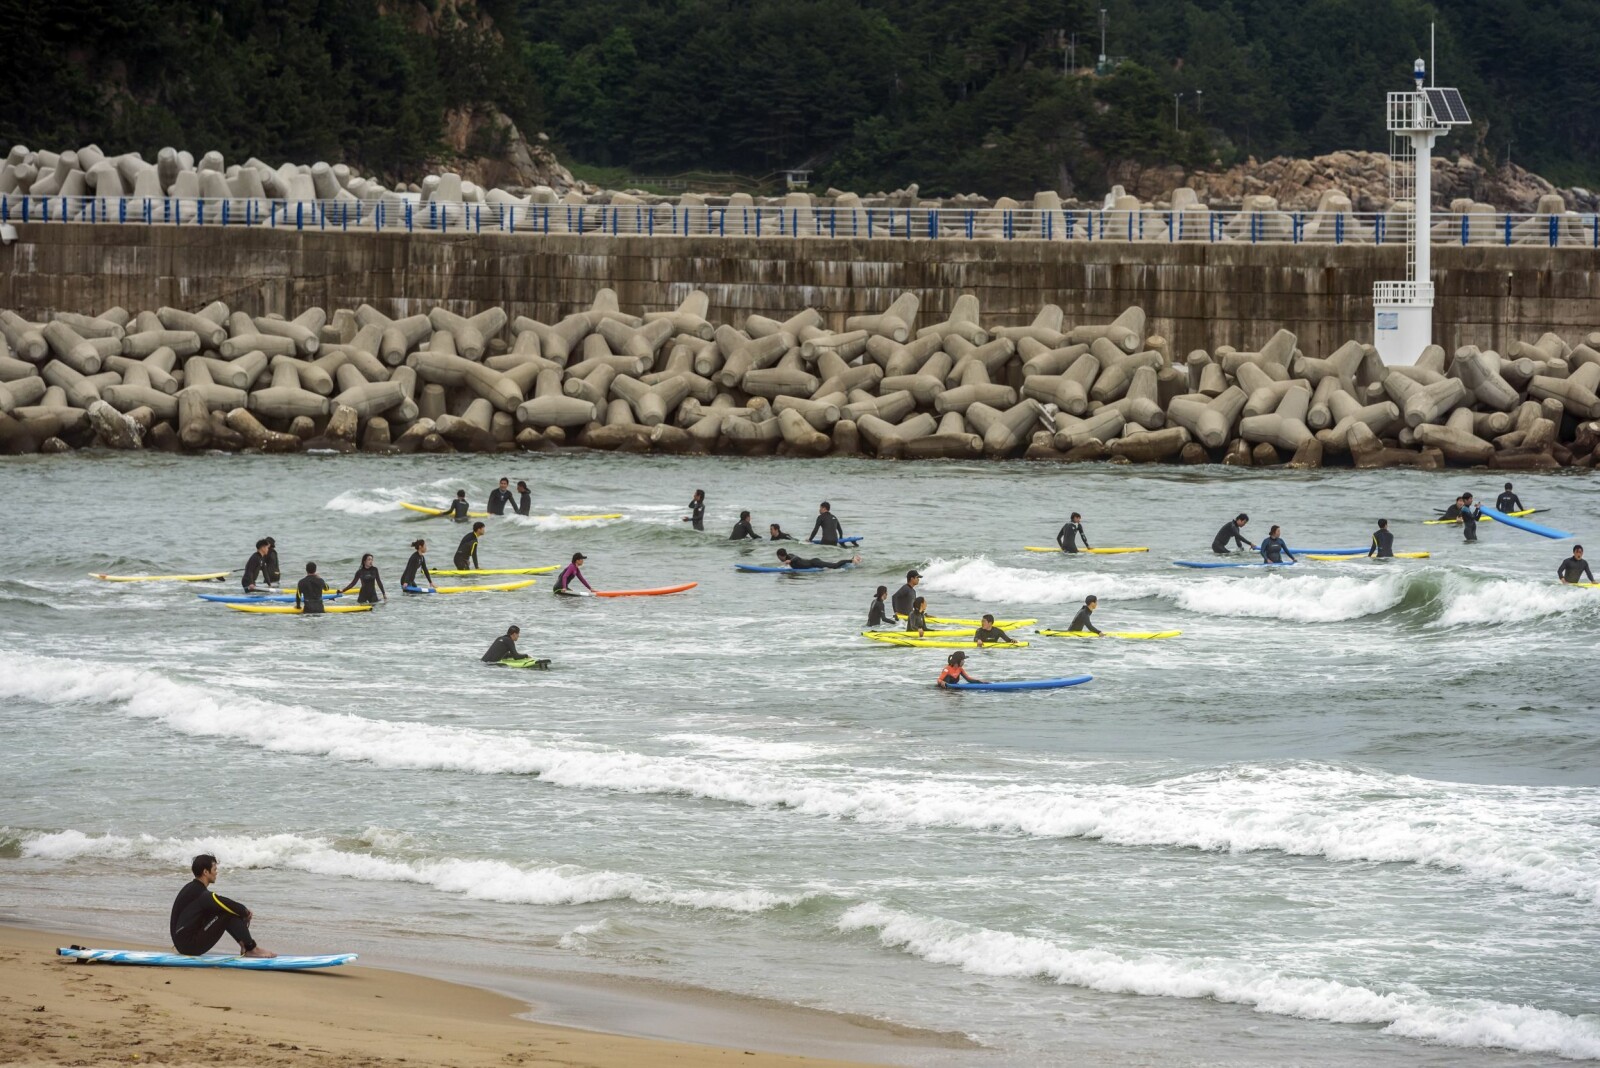 <b>POPULÆRT:</b> Det kan bli folksomt med surfere på bølgene på 38th Parallel Beach. Selv på en gråværsdag.